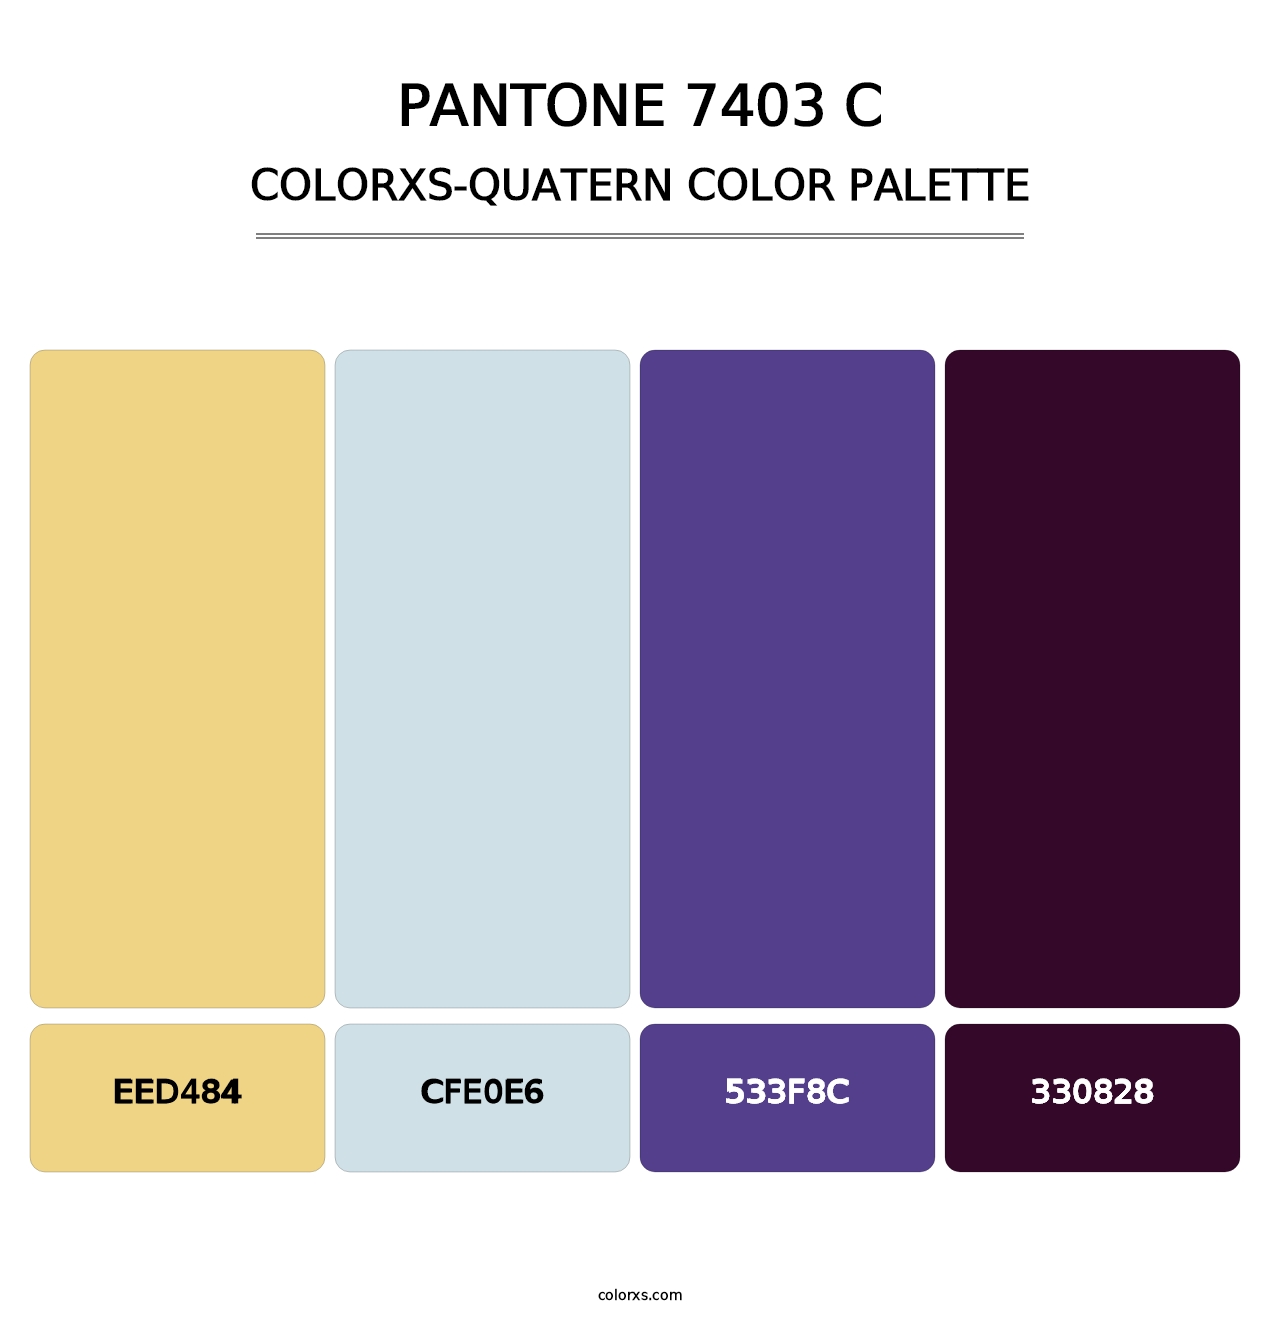 PANTONE 7403 C - Colorxs Quatern Palette